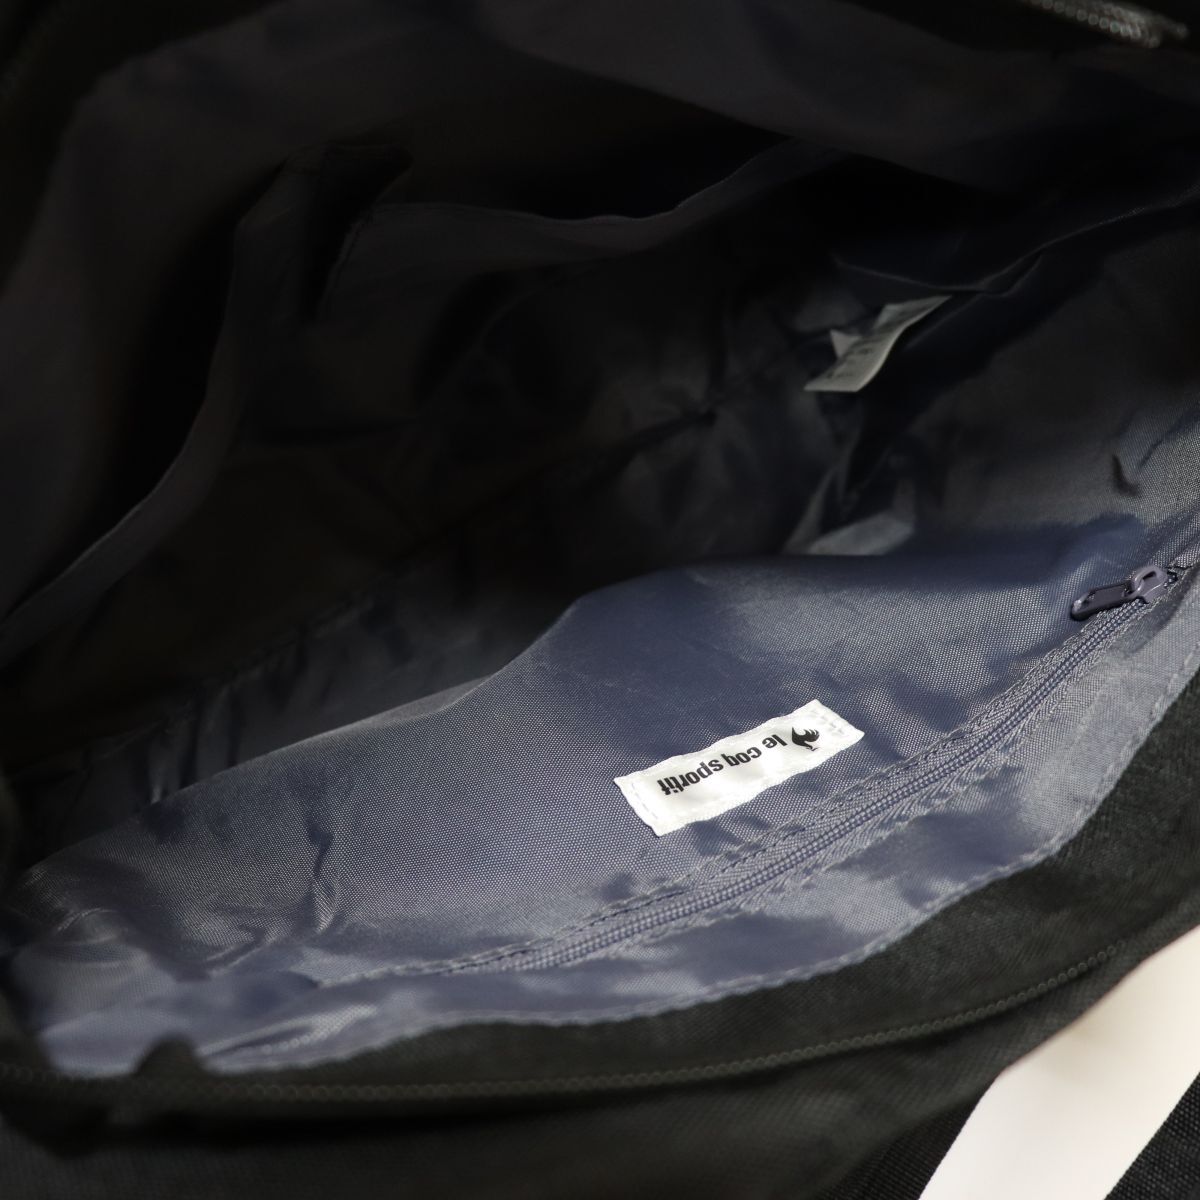 * Le Coq le coq sportif new goods pocket fully 2WAY sweat shoulder bag tote bag bag BAG black [36231-001] one six *QWER#